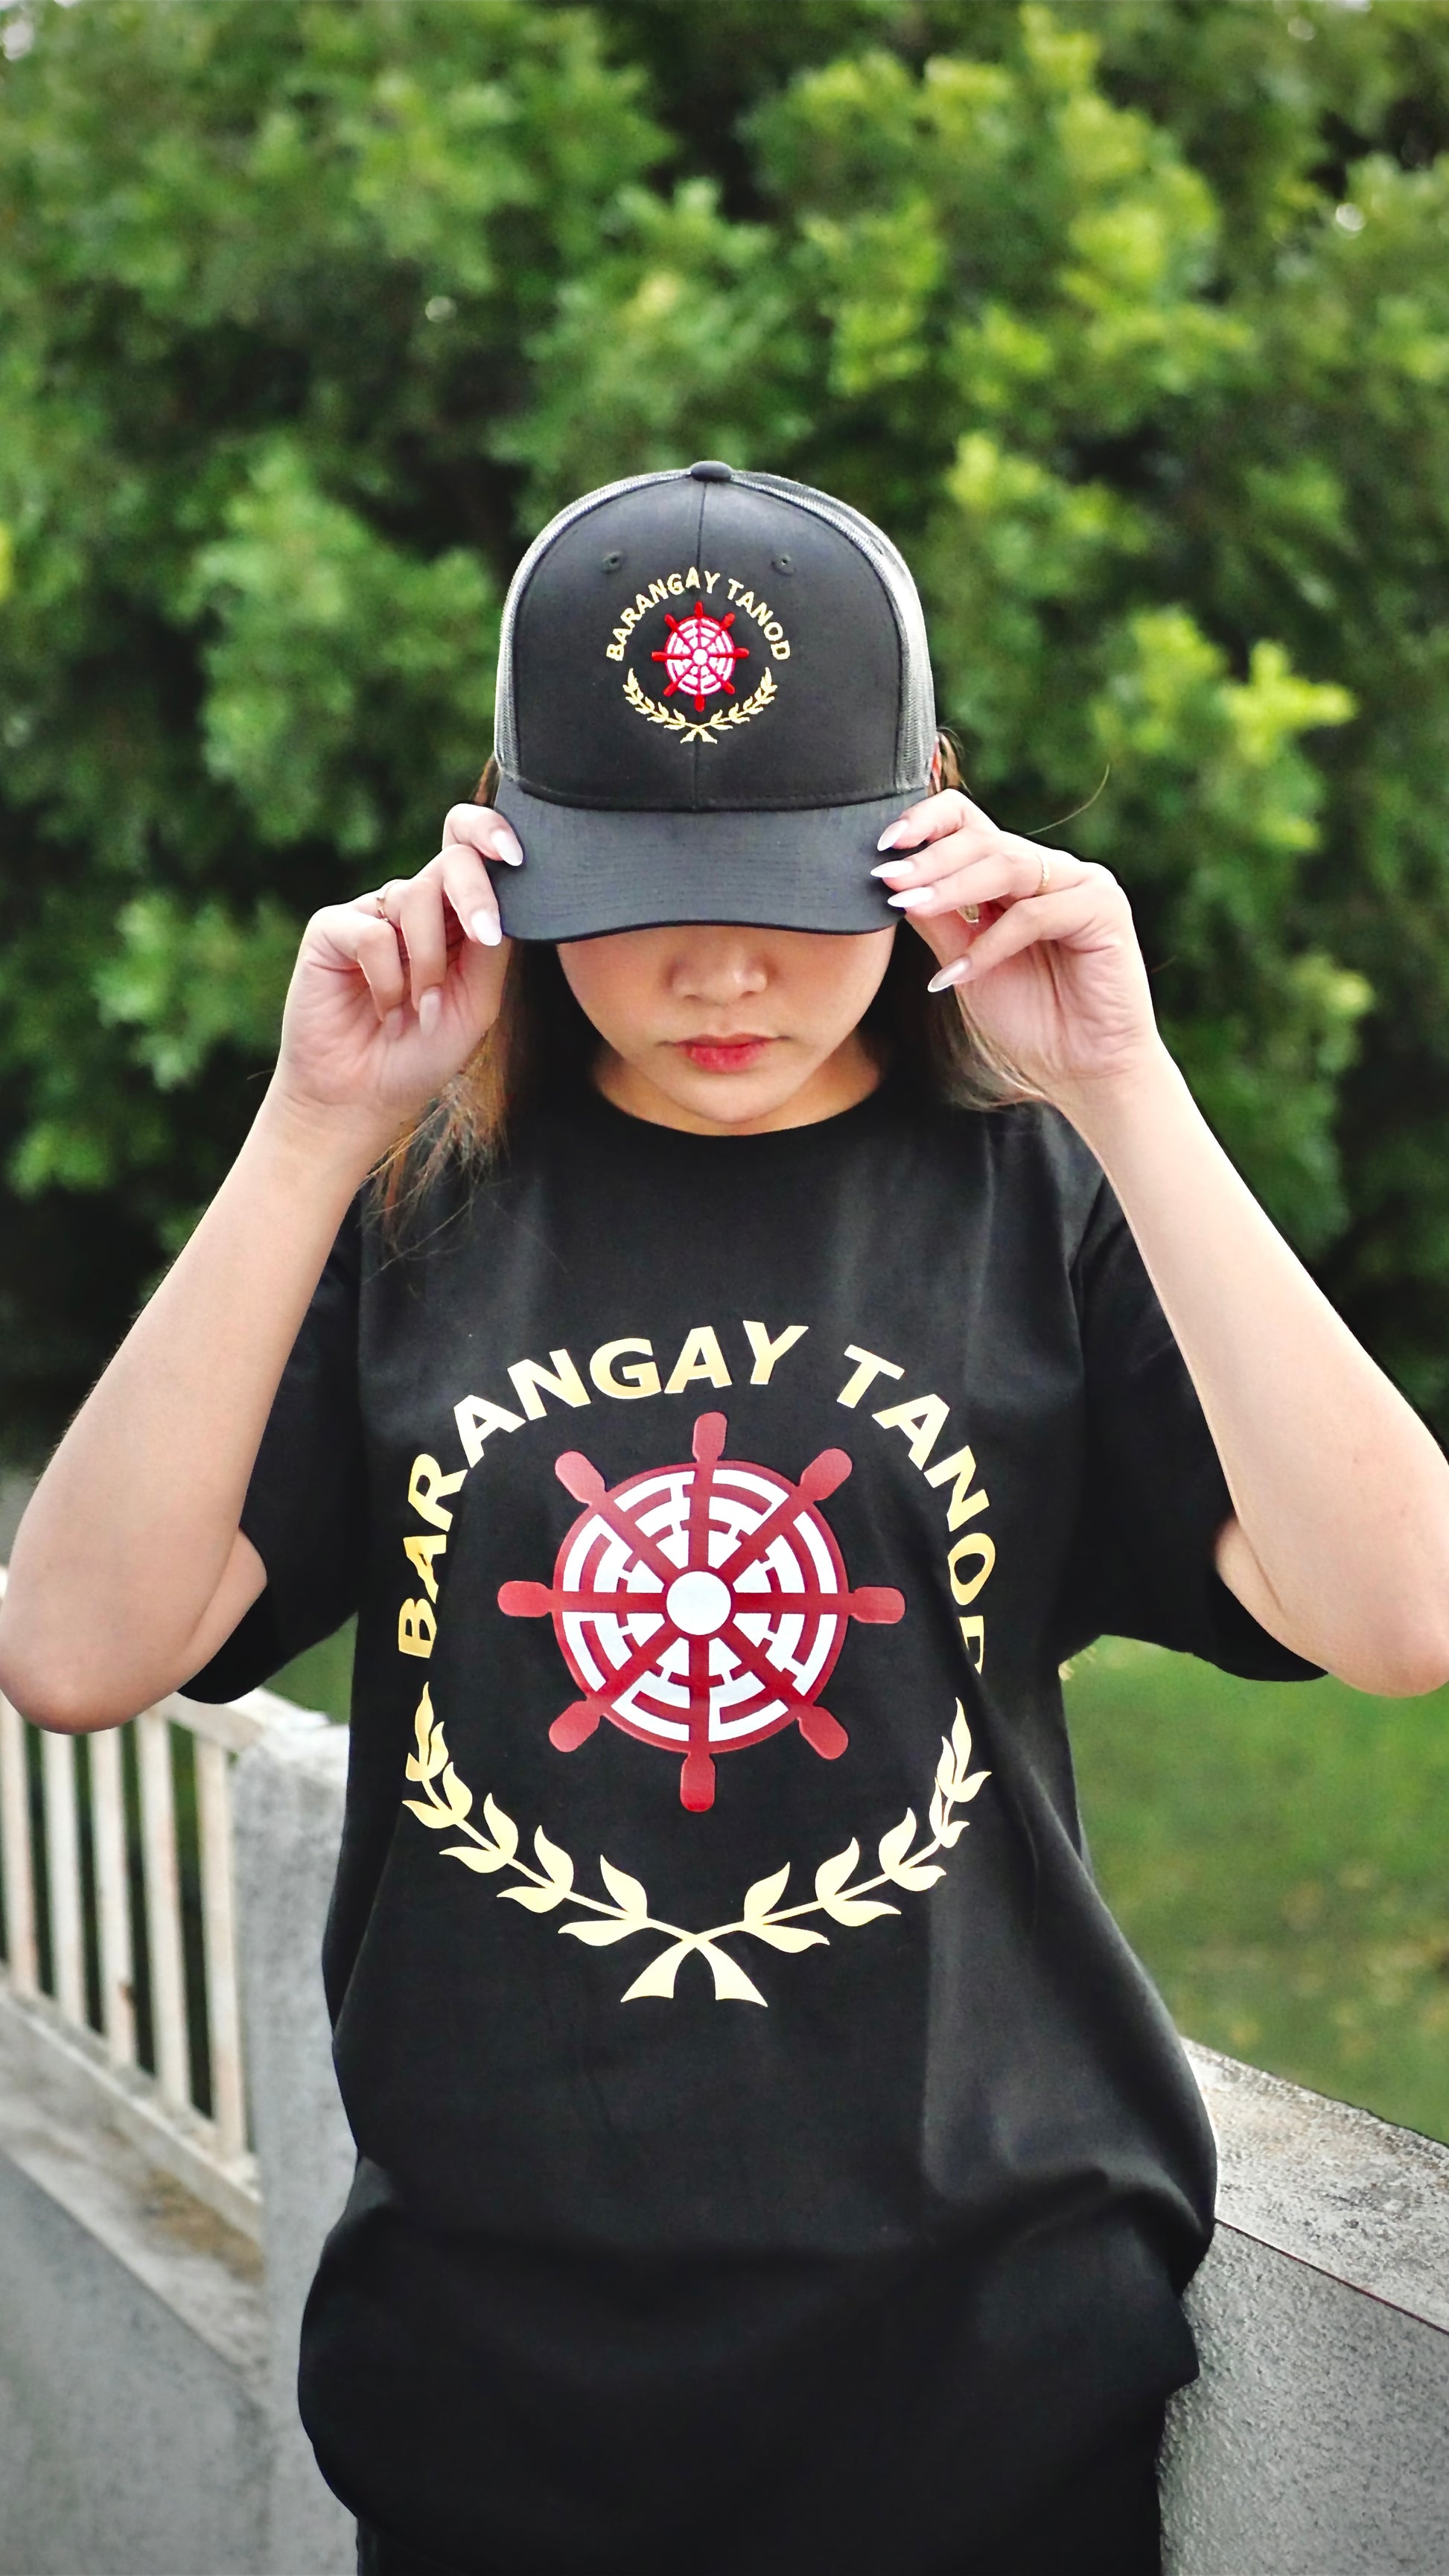 barangay tanod hat, brgy tanod hat, ninong cap usa, ninong ry cap